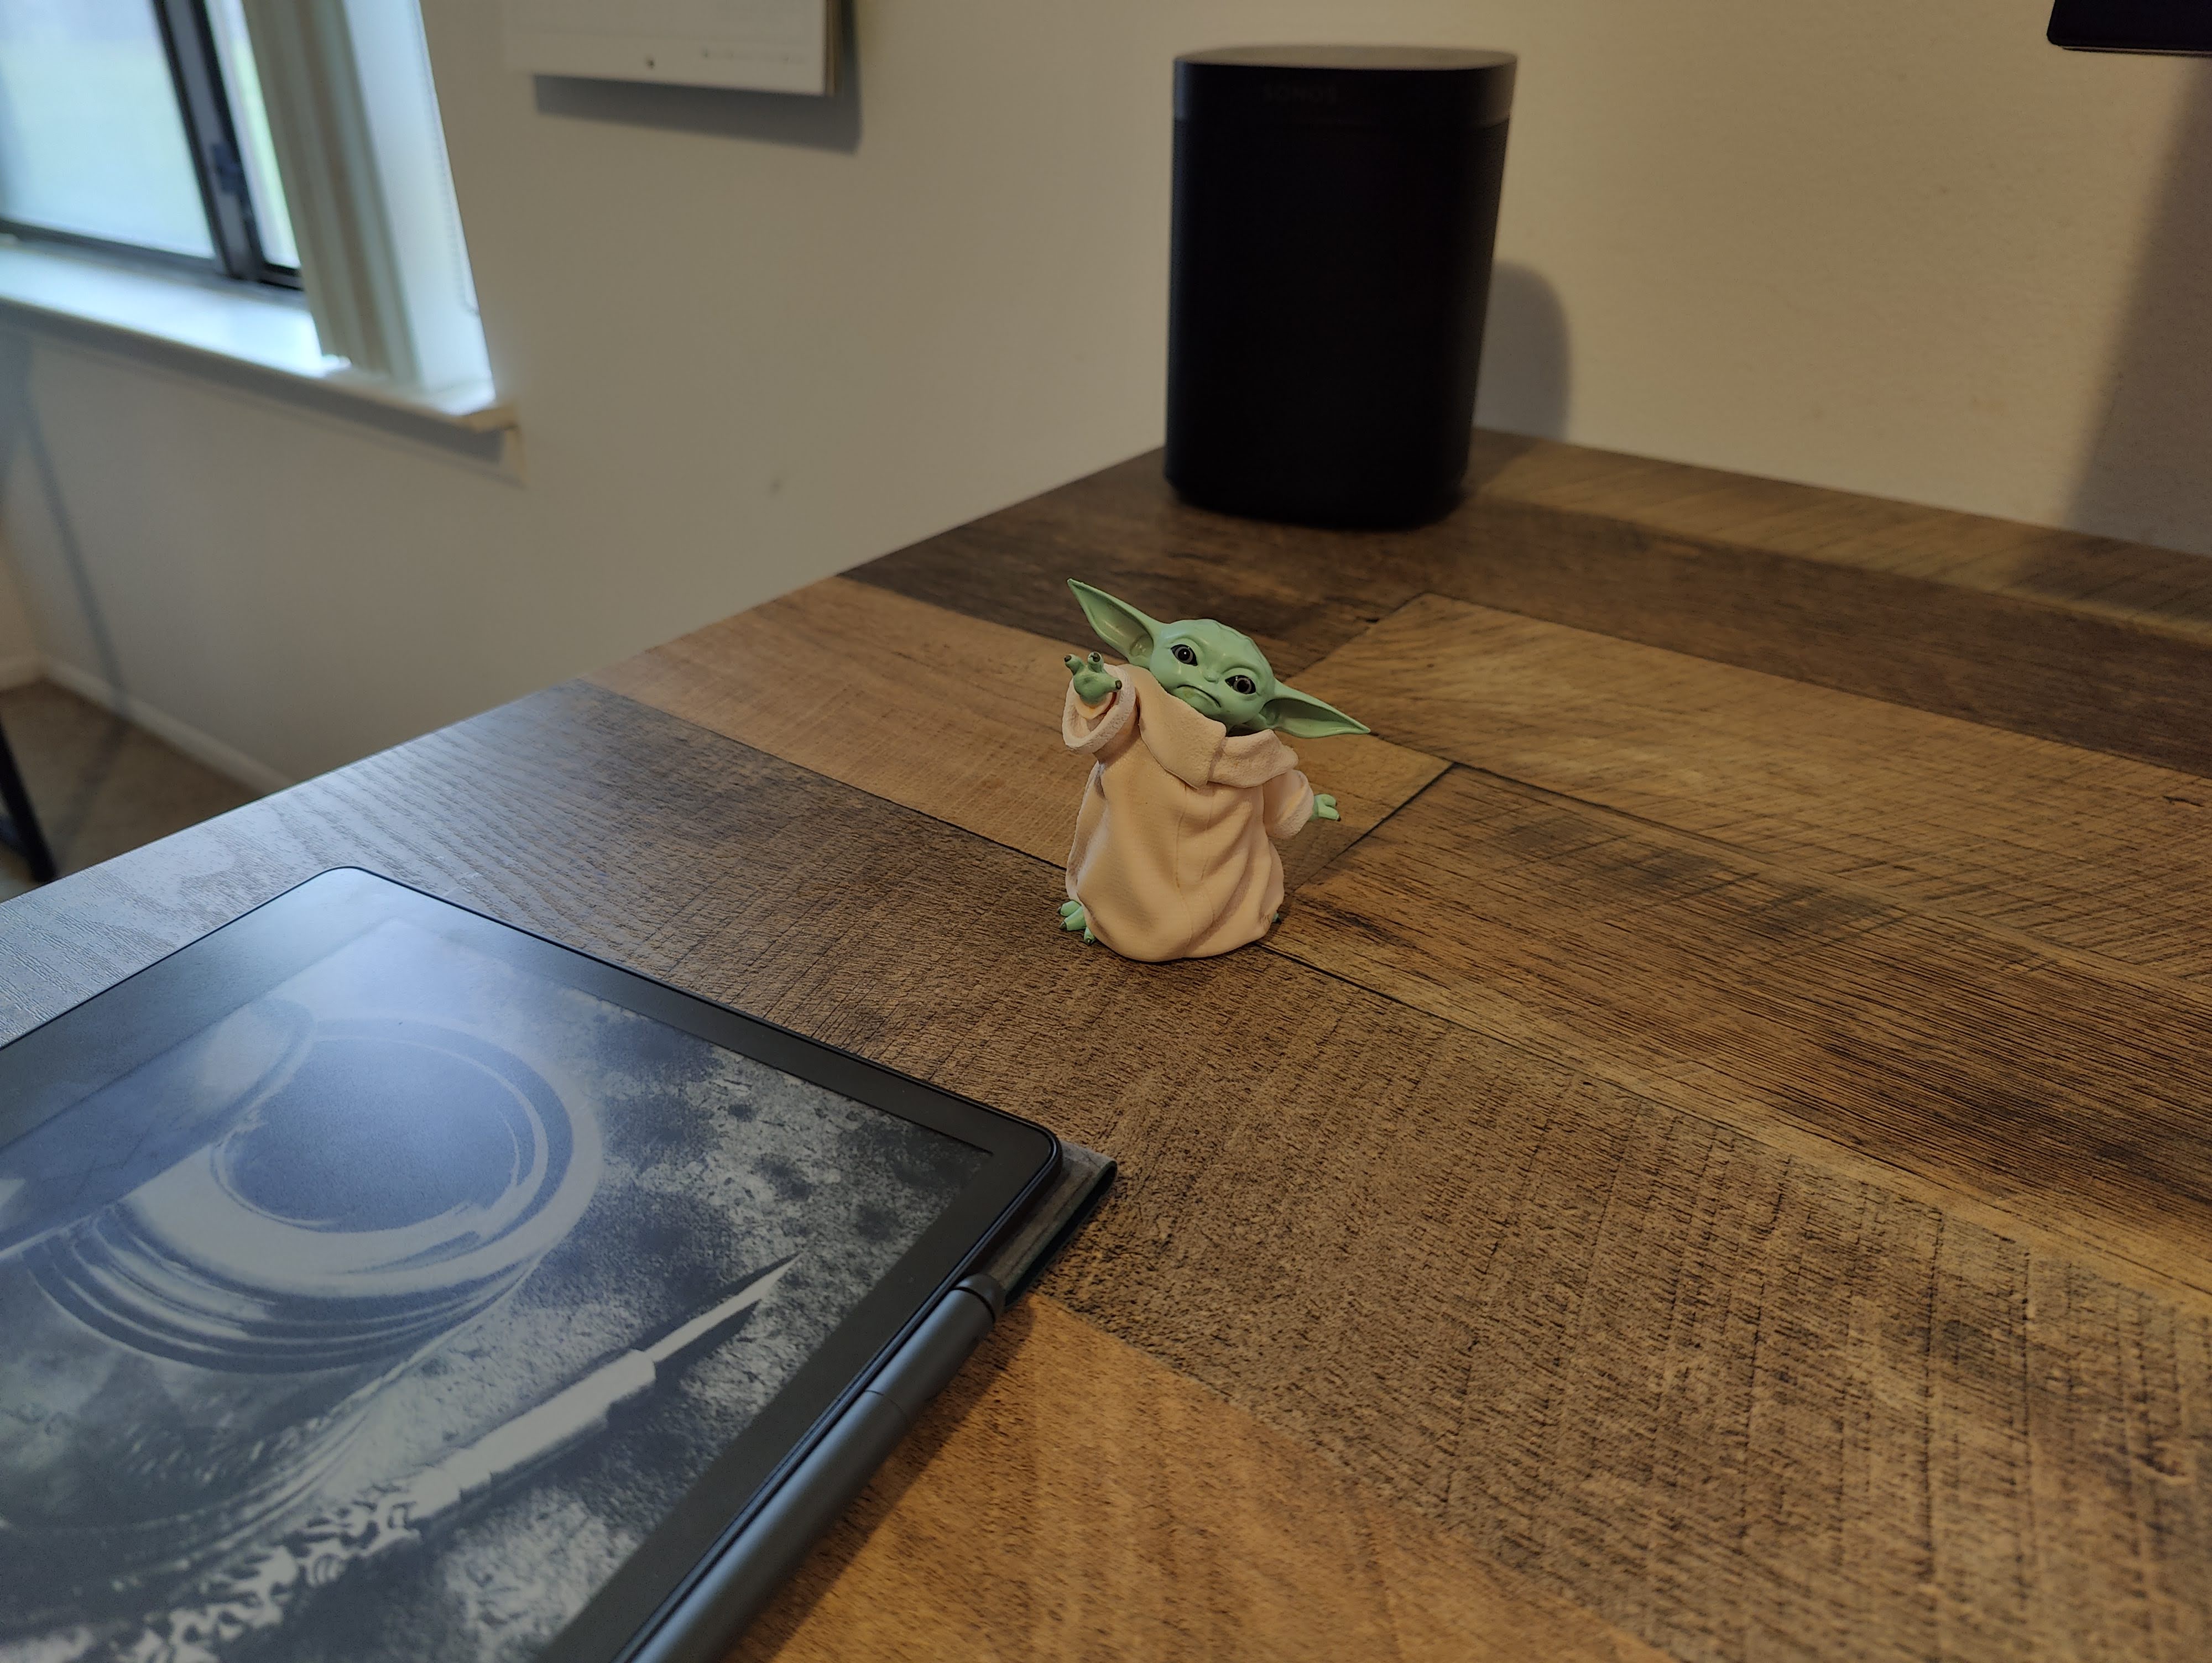 Amostra de câmera do OnePlus 10 Pro.  É uma foto de uma pequena estatueta de bebê Yoda em uma mesa.